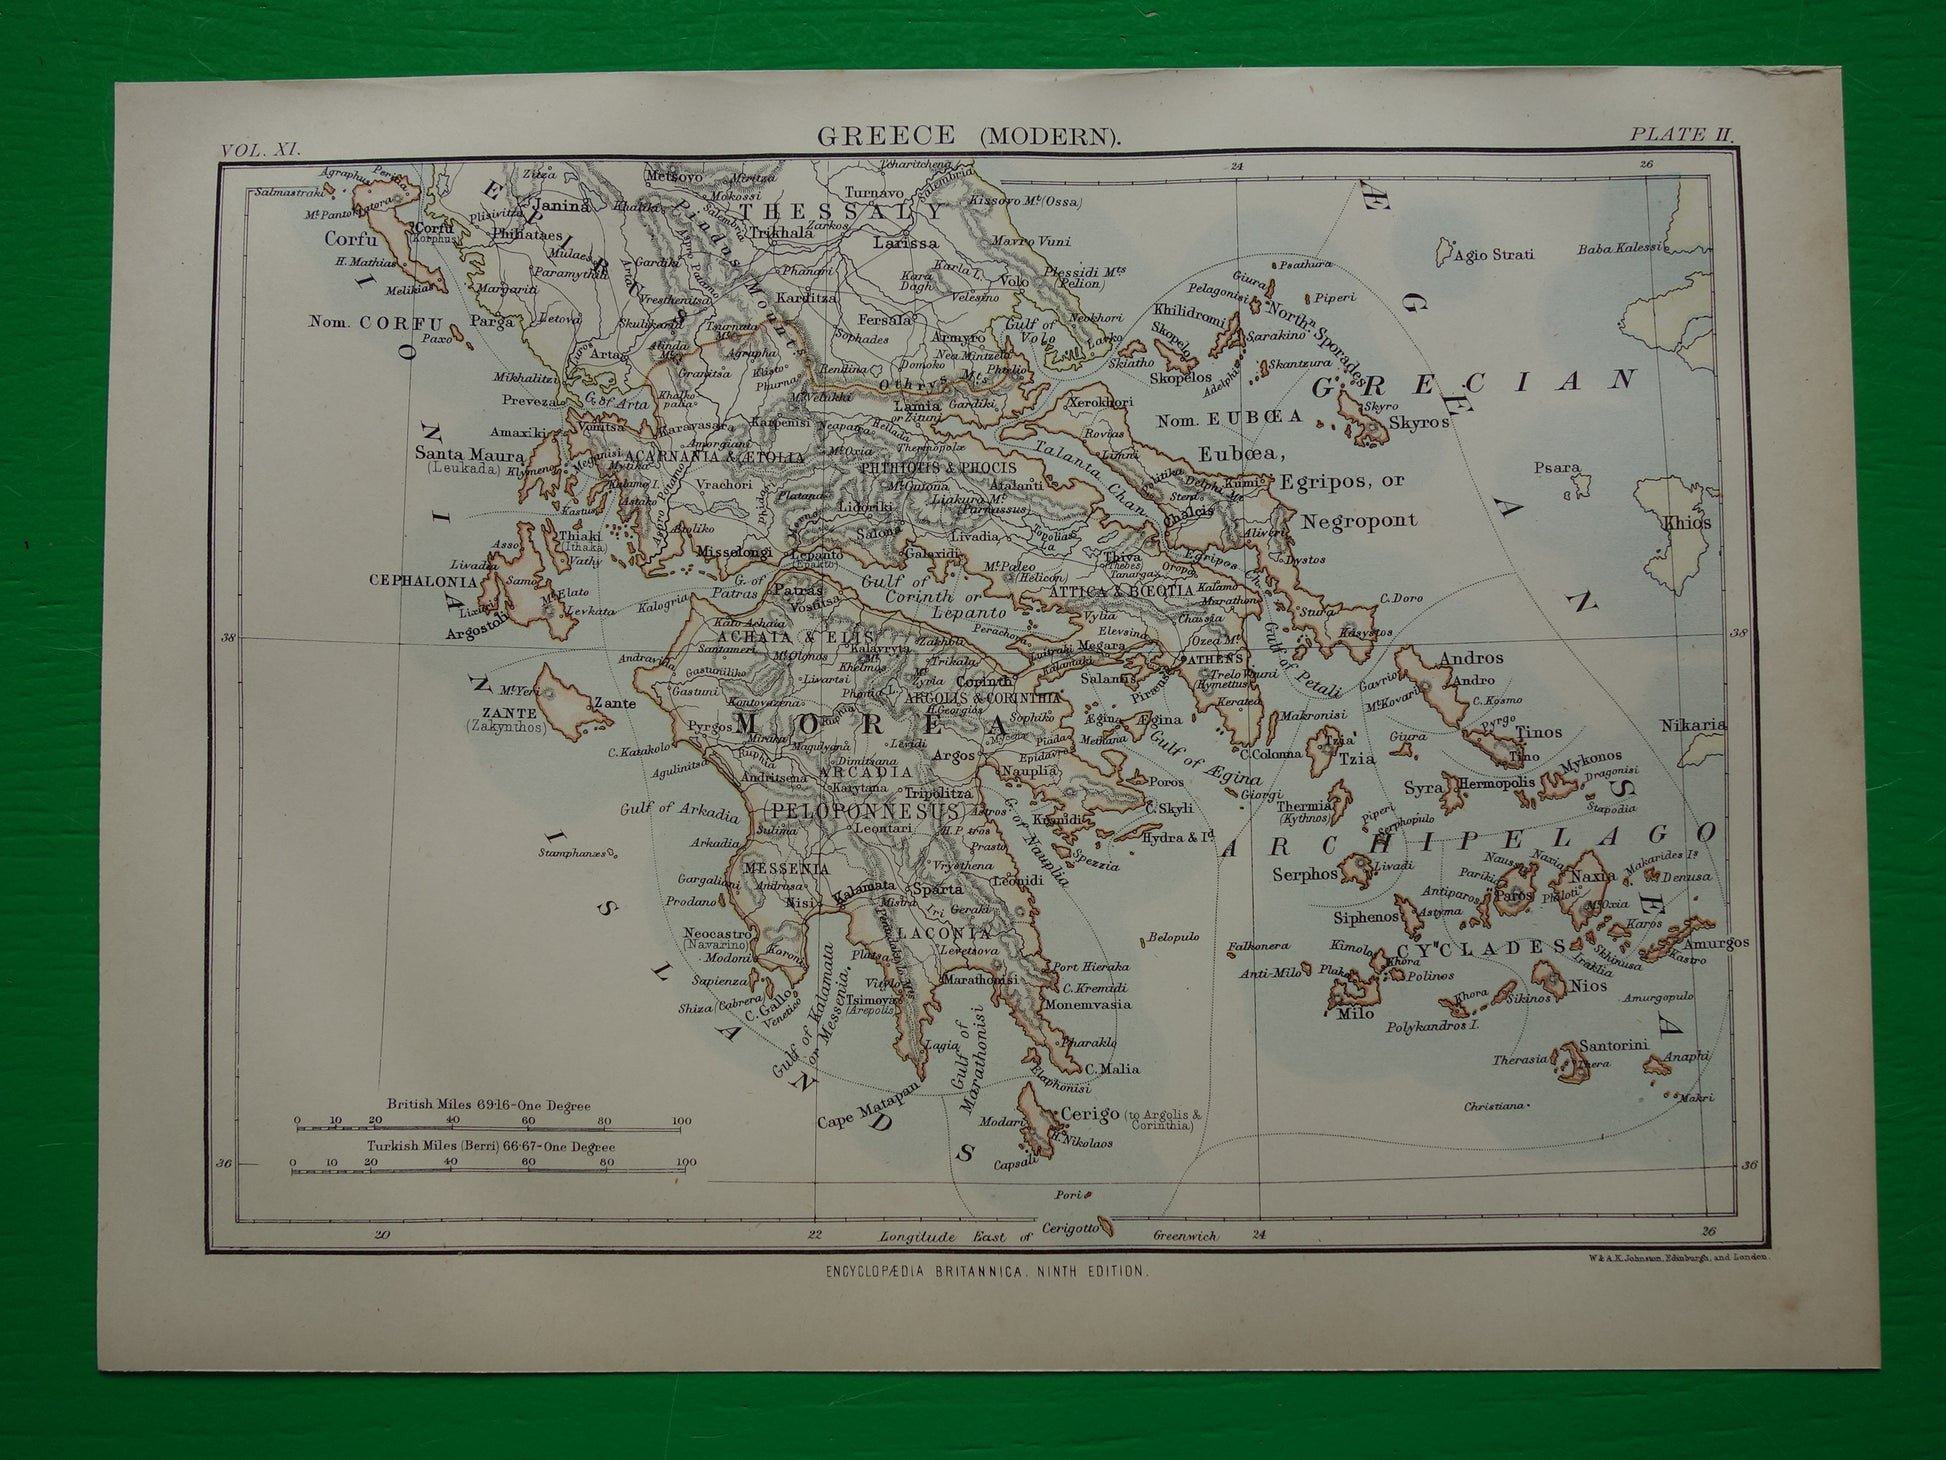 GRIEKENLAND oude landkaart van Griekenland originele Engelse antieke kaart uit 1880 vintage kaarten